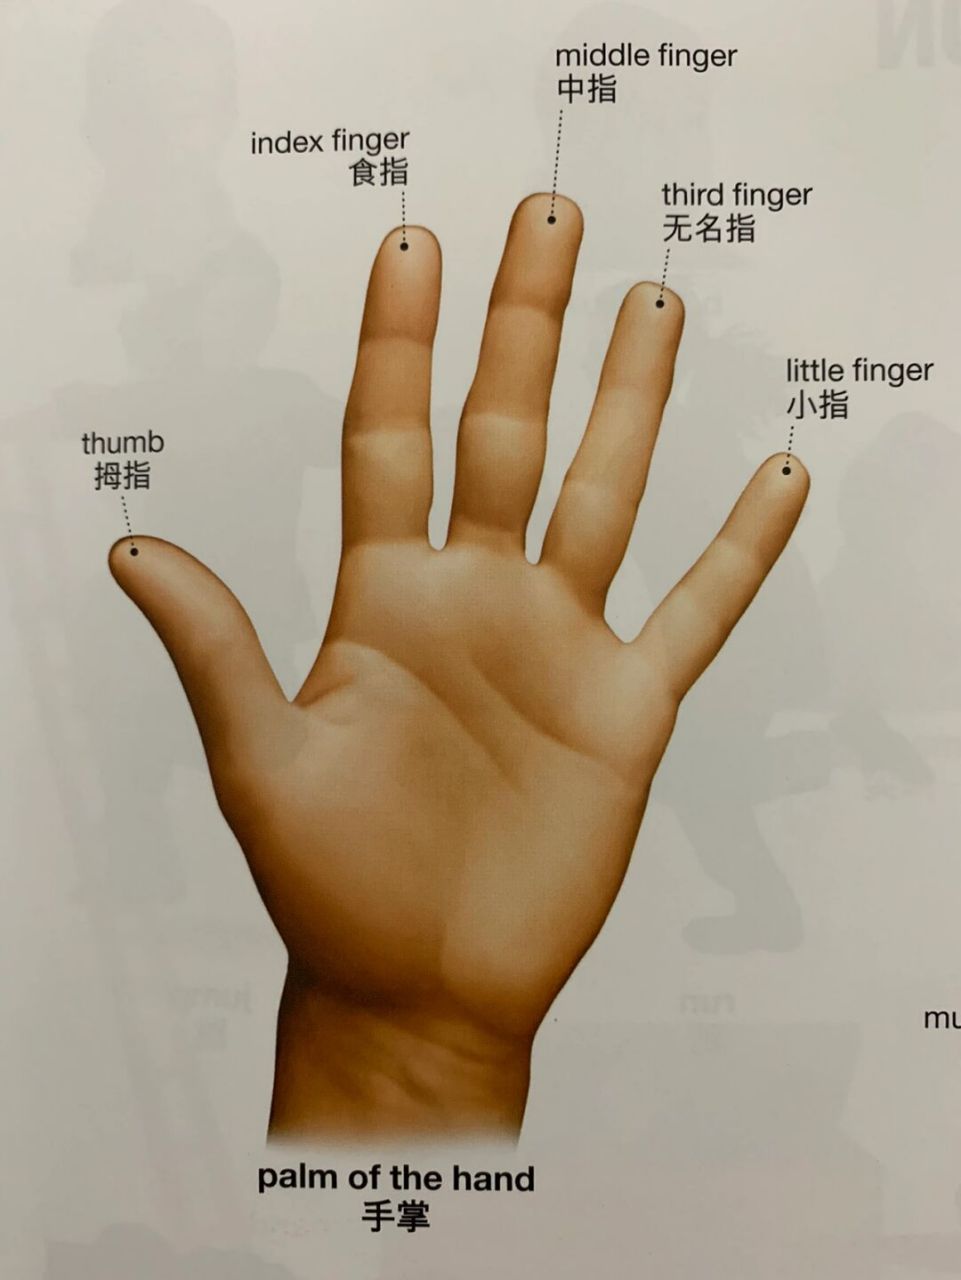 五个手指头你还只知道finger吗 无名指也叫ring finger